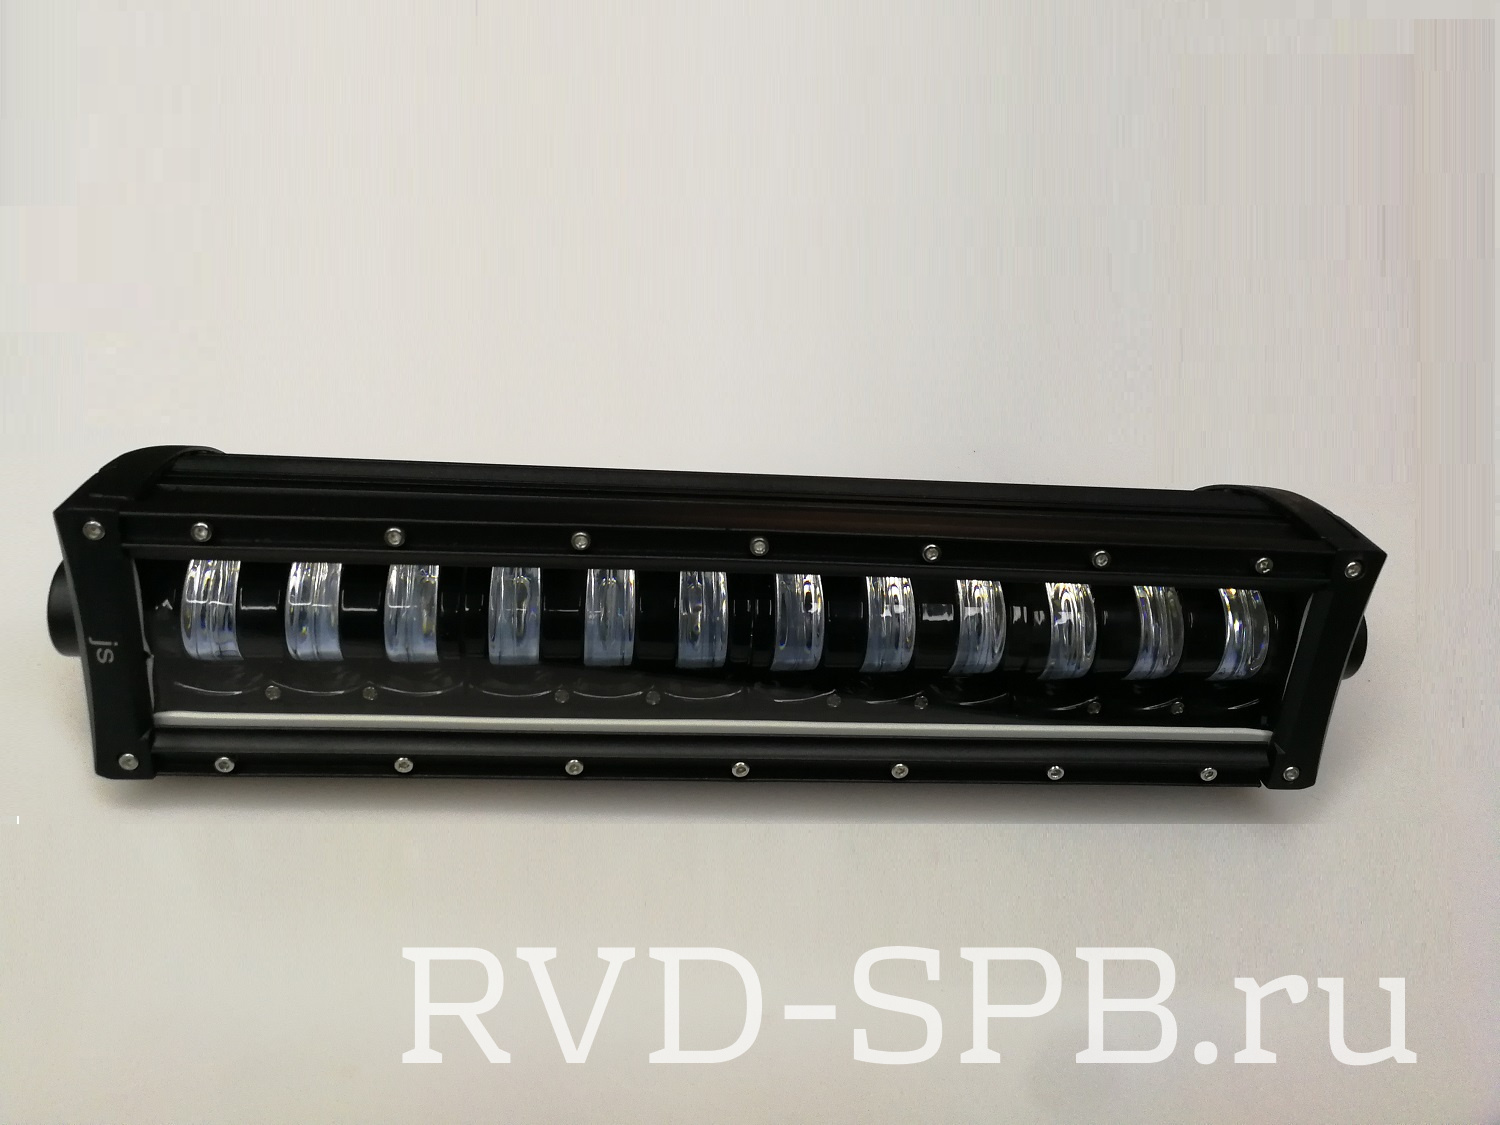 	Фара светодиодная CH1980 96W 12 диодов по 8W (габаритные размеры 115*90*420мм; цветовая температура 6000K; 60° ближний свет, 30° дальний свет)